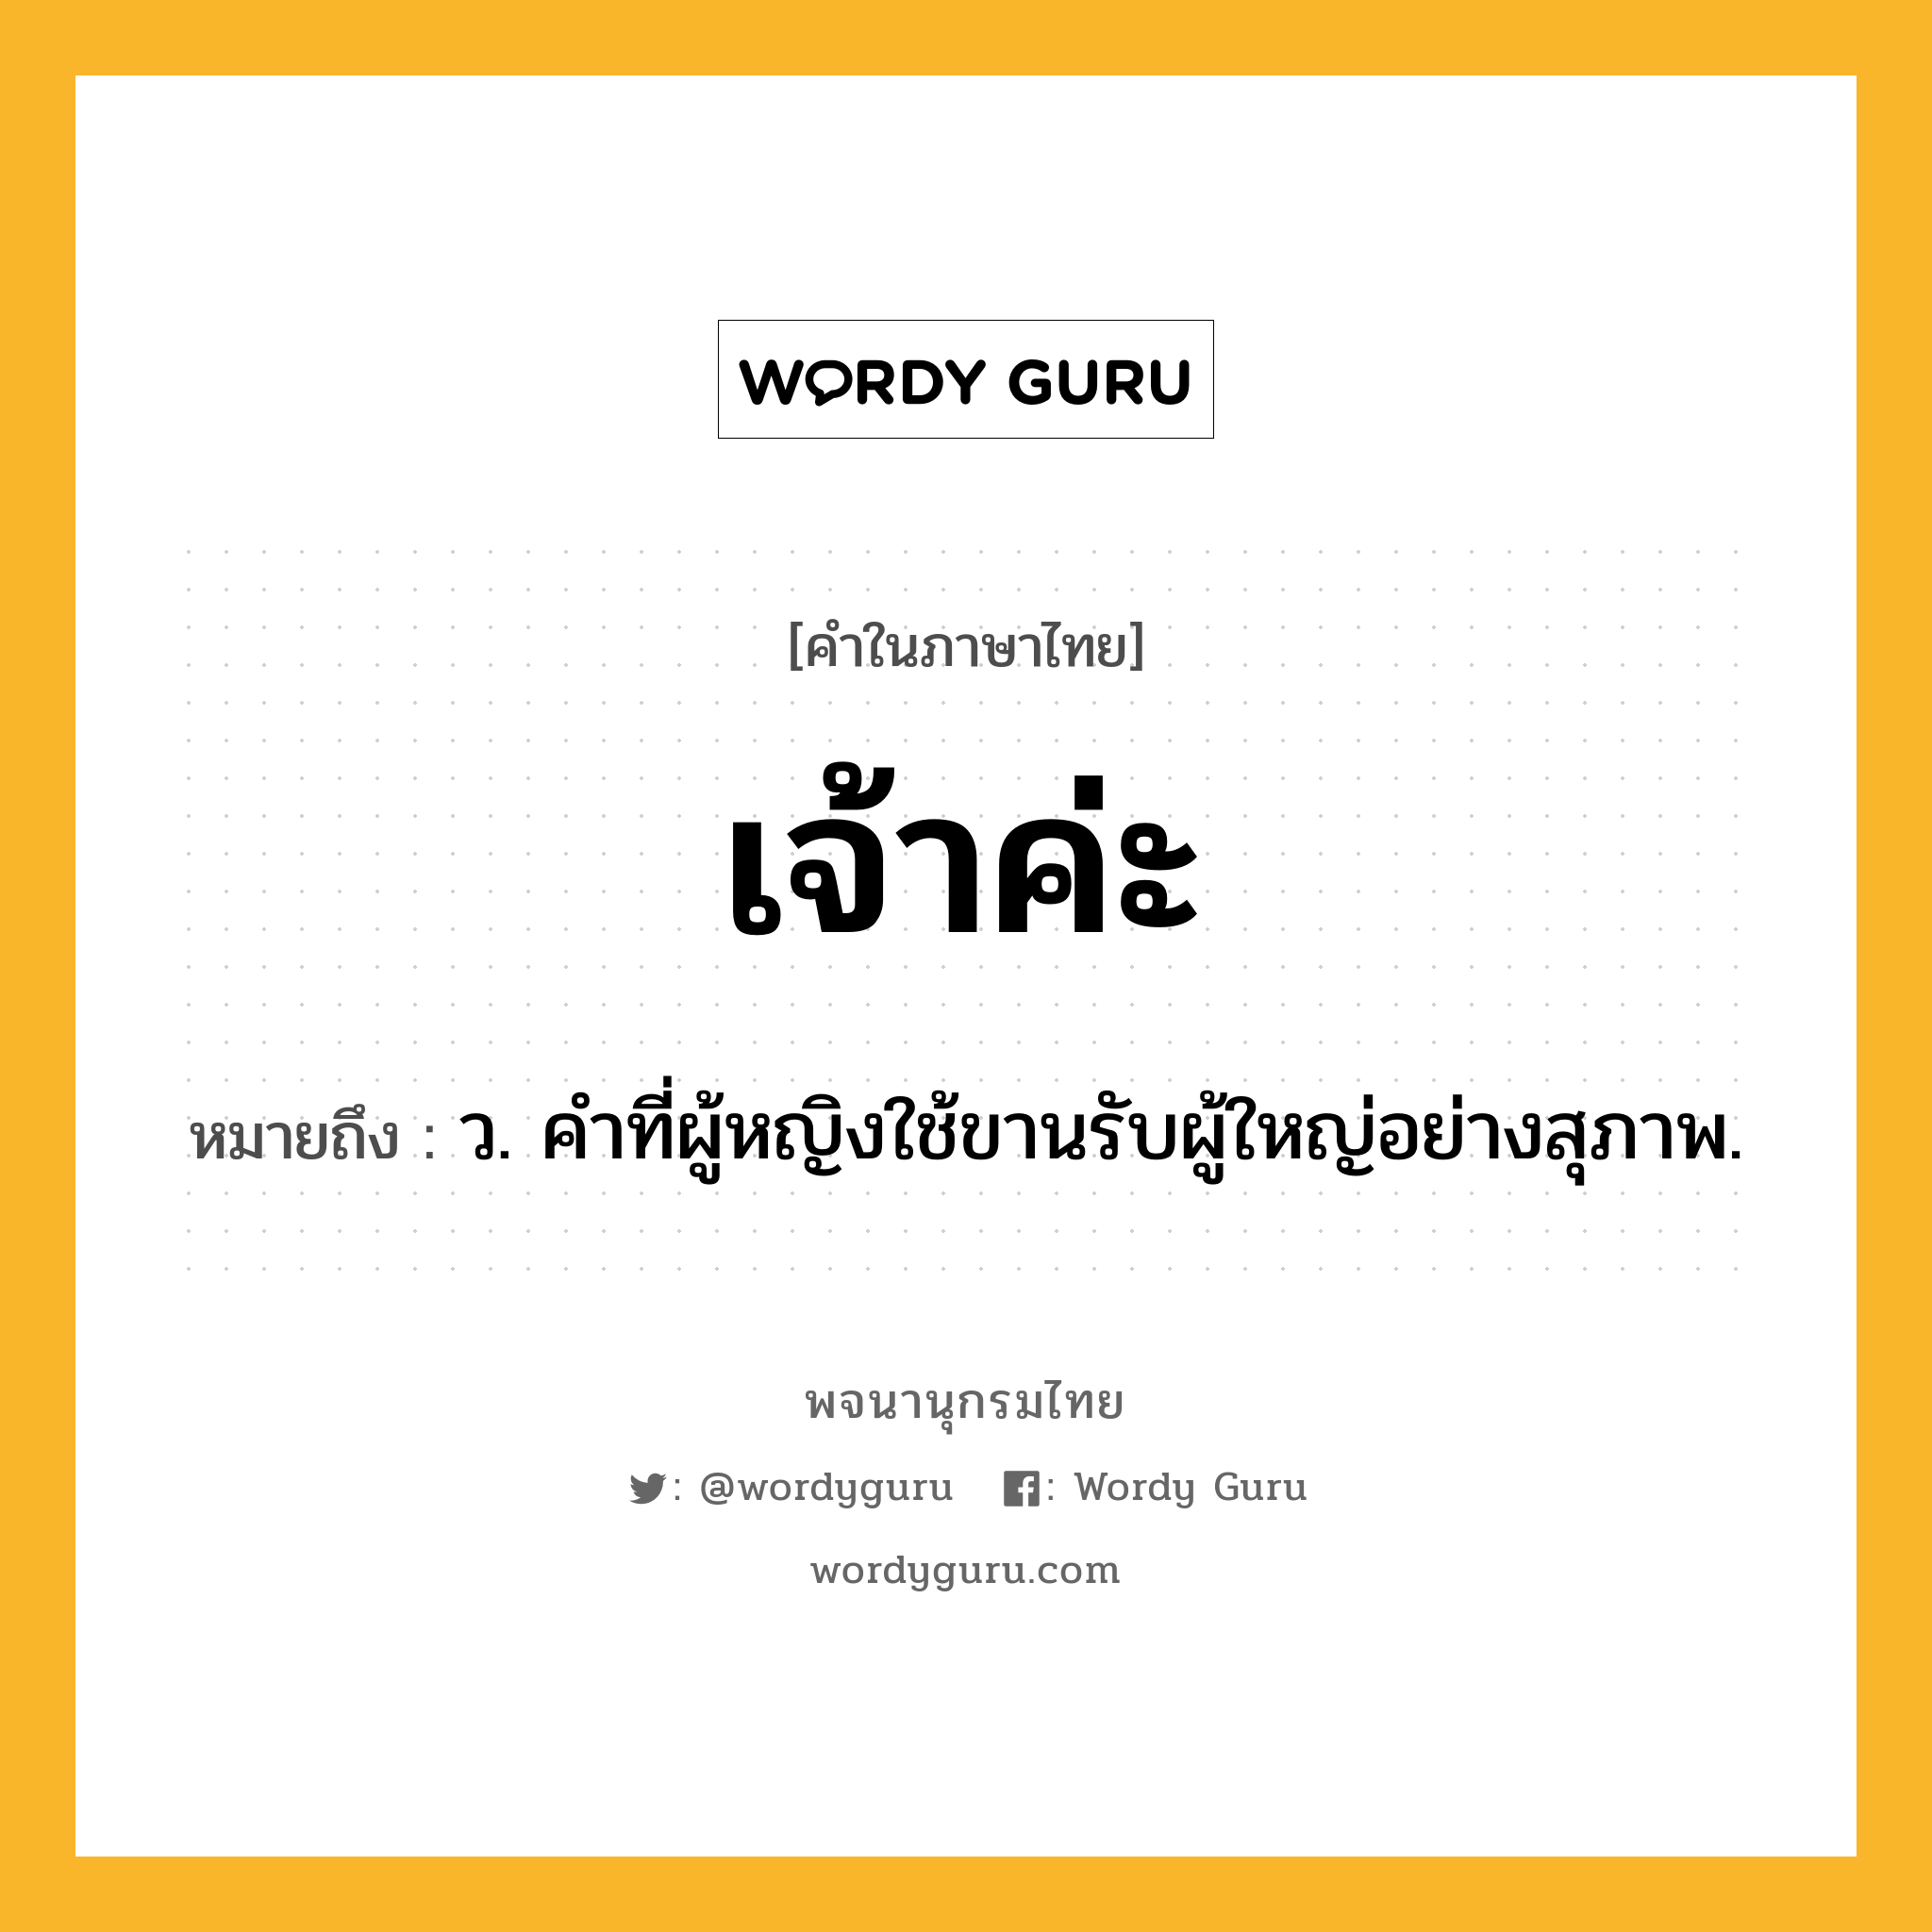 เจ้าค่ะ ความหมาย หมายถึงอะไร?, คำในภาษาไทย เจ้าค่ะ หมายถึง ว. คำที่ผู้หญิงใช้ขานรับผู้ใหญ่อย่างสุภาพ.